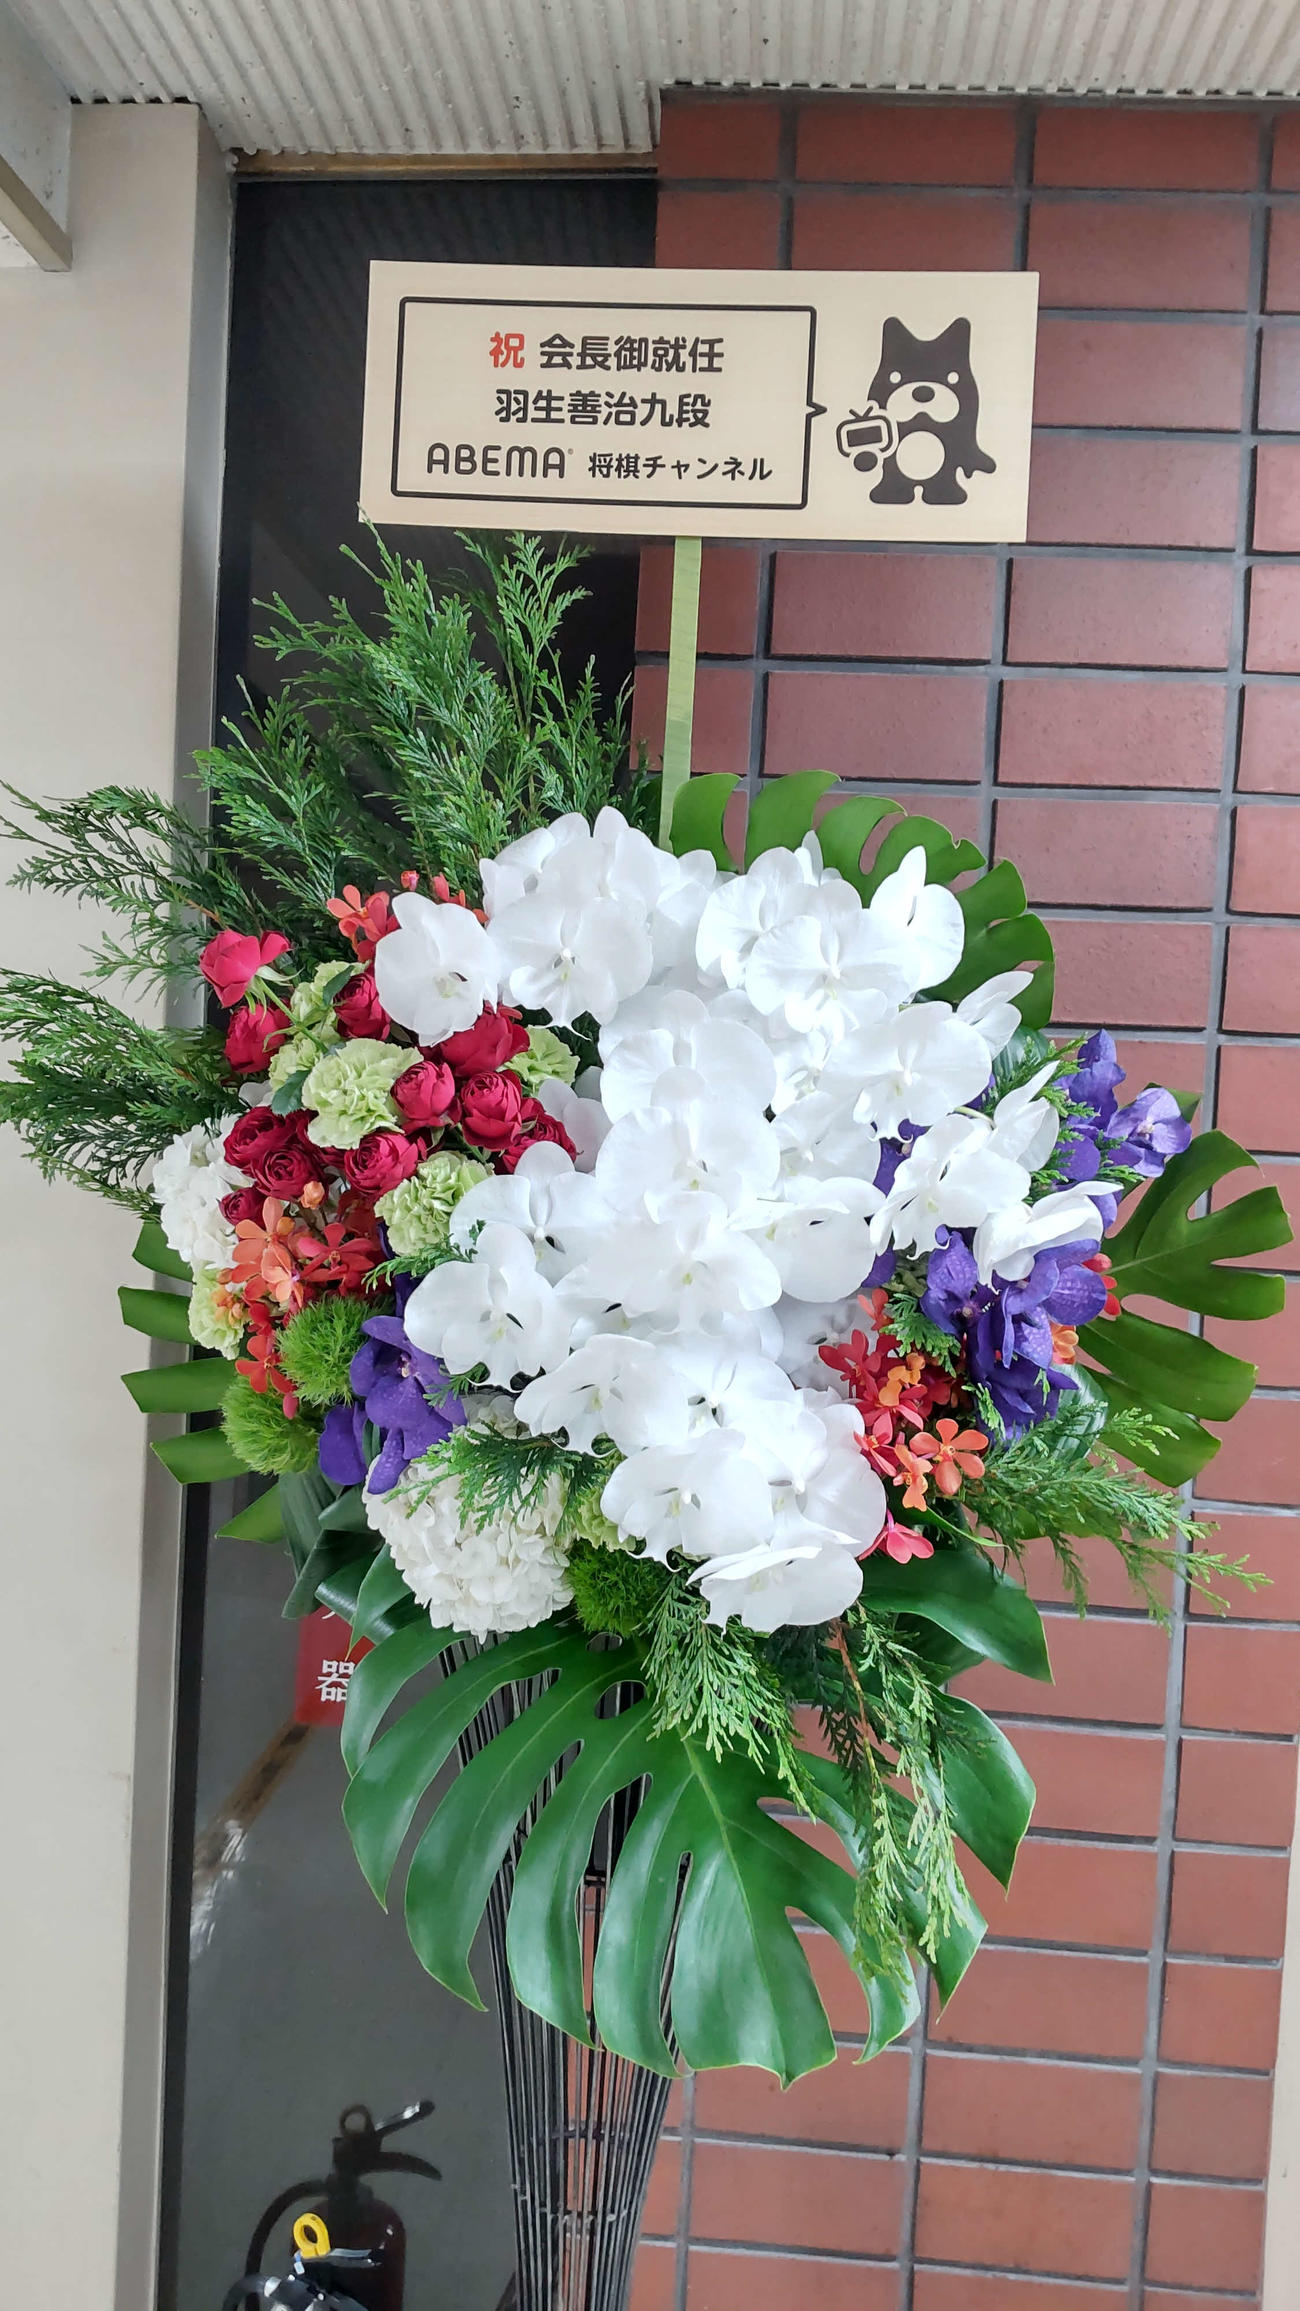 羽生善治会長の就任を祝ってABEMAが贈られたスタンド花